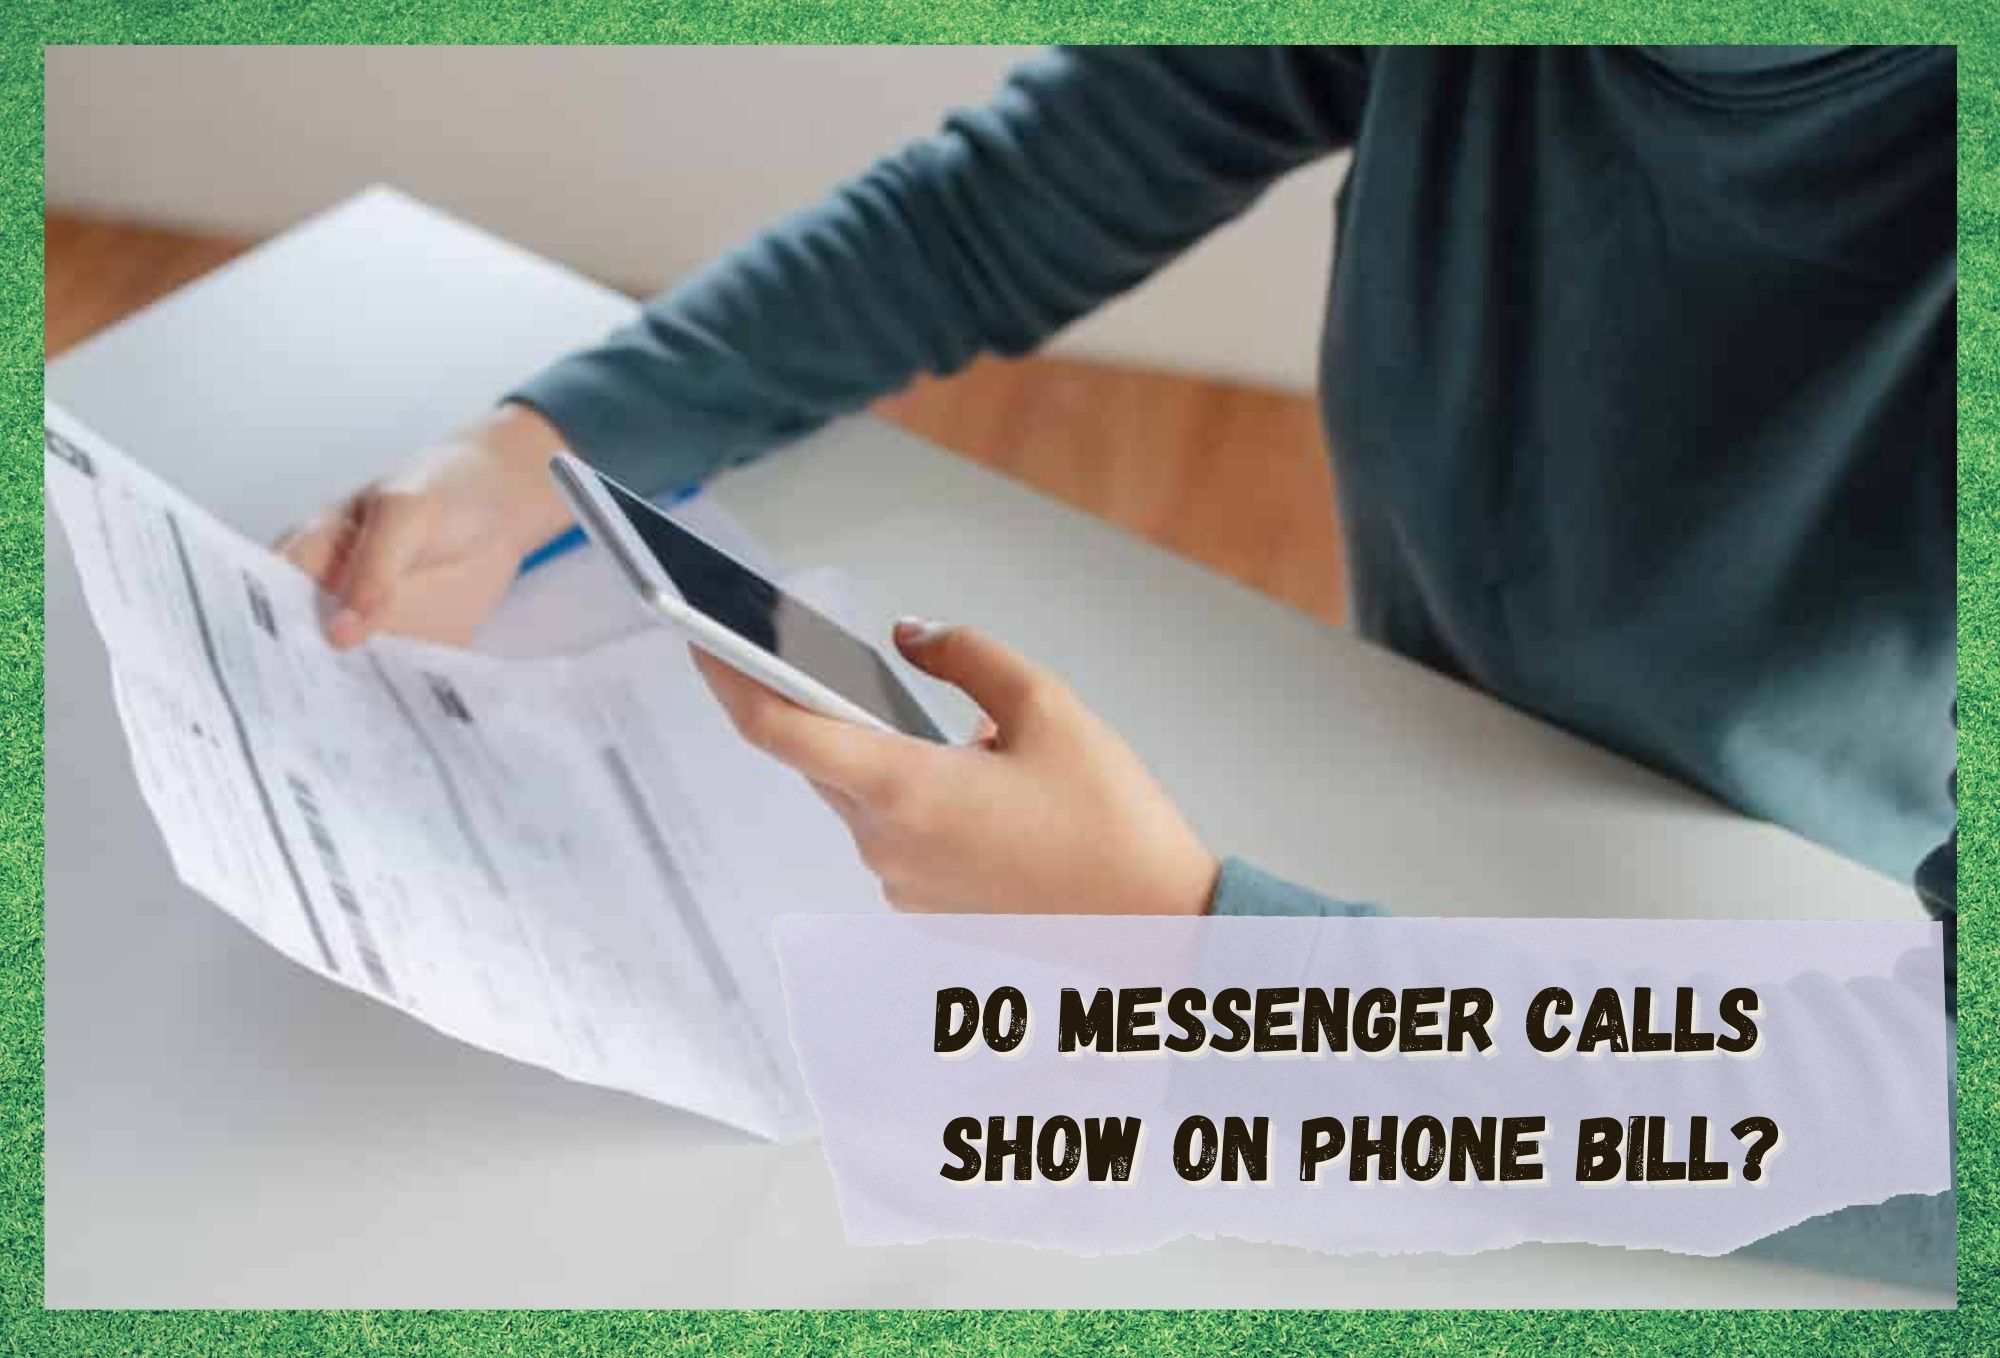 Apelurile de pe Messenger apar pe factura de telefon?